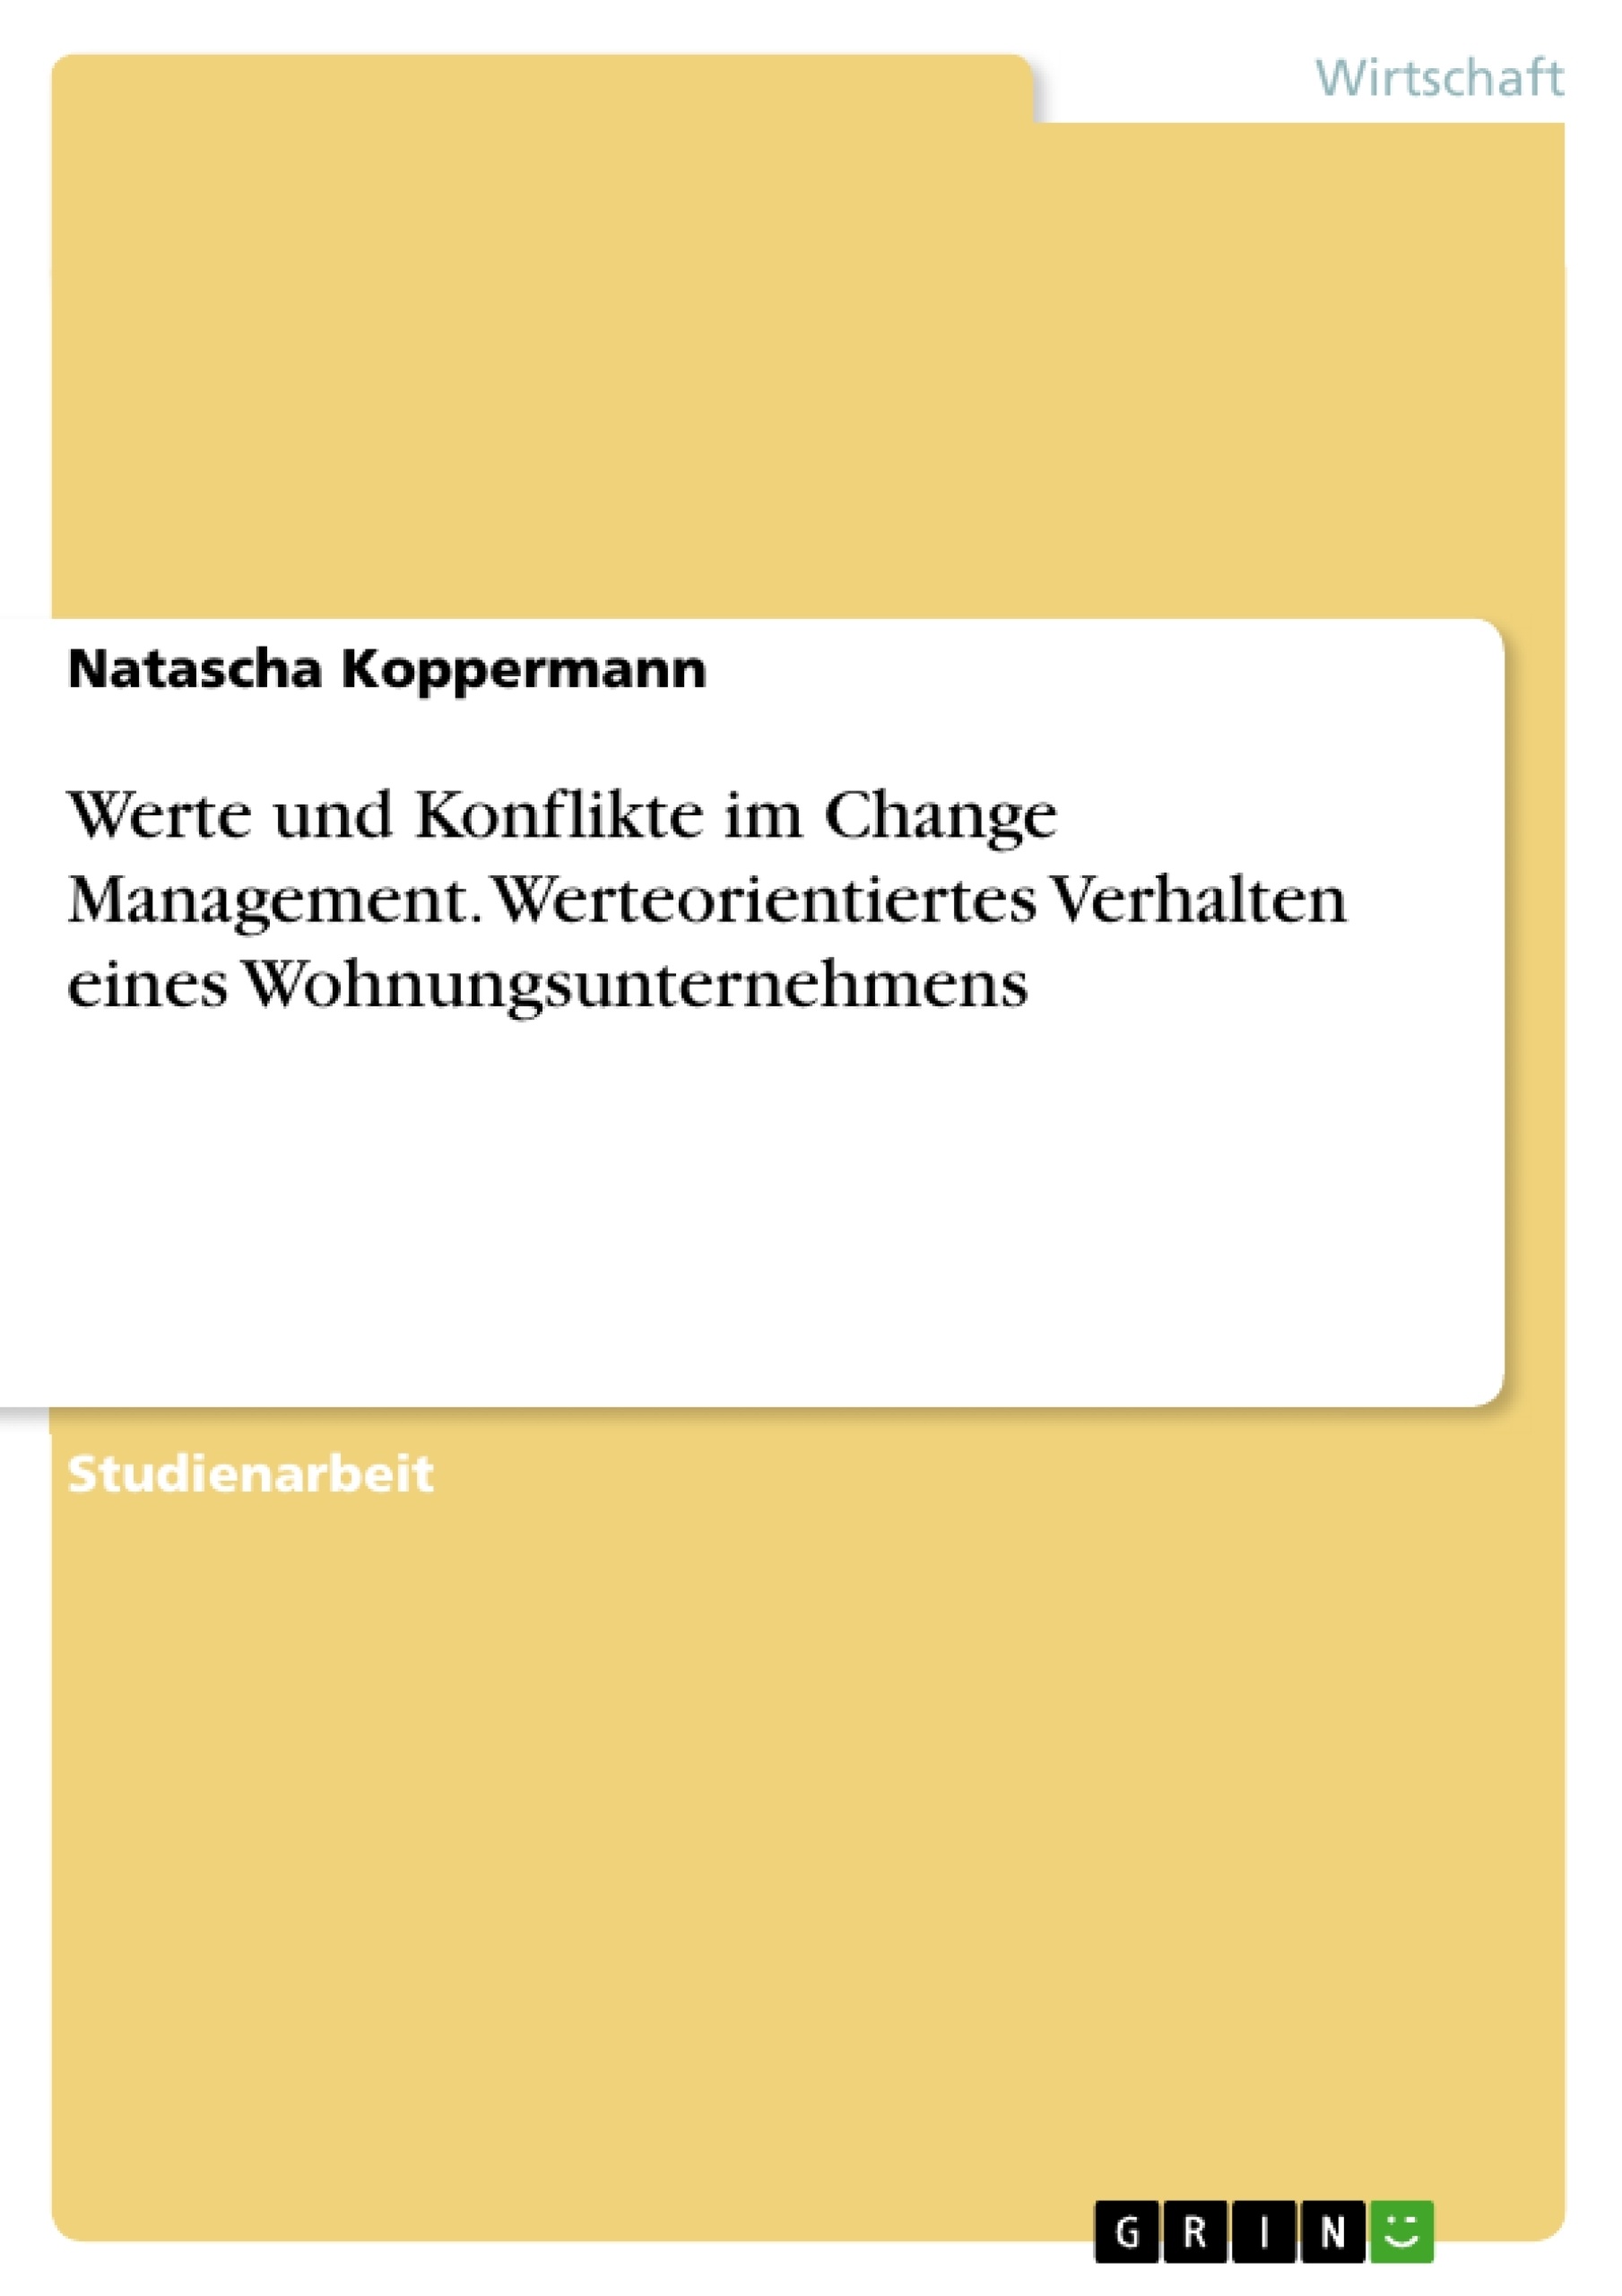 Title: Werte und Konflikte im Change Management. Werteorientiertes Verhalten eines Wohnungsunternehmens